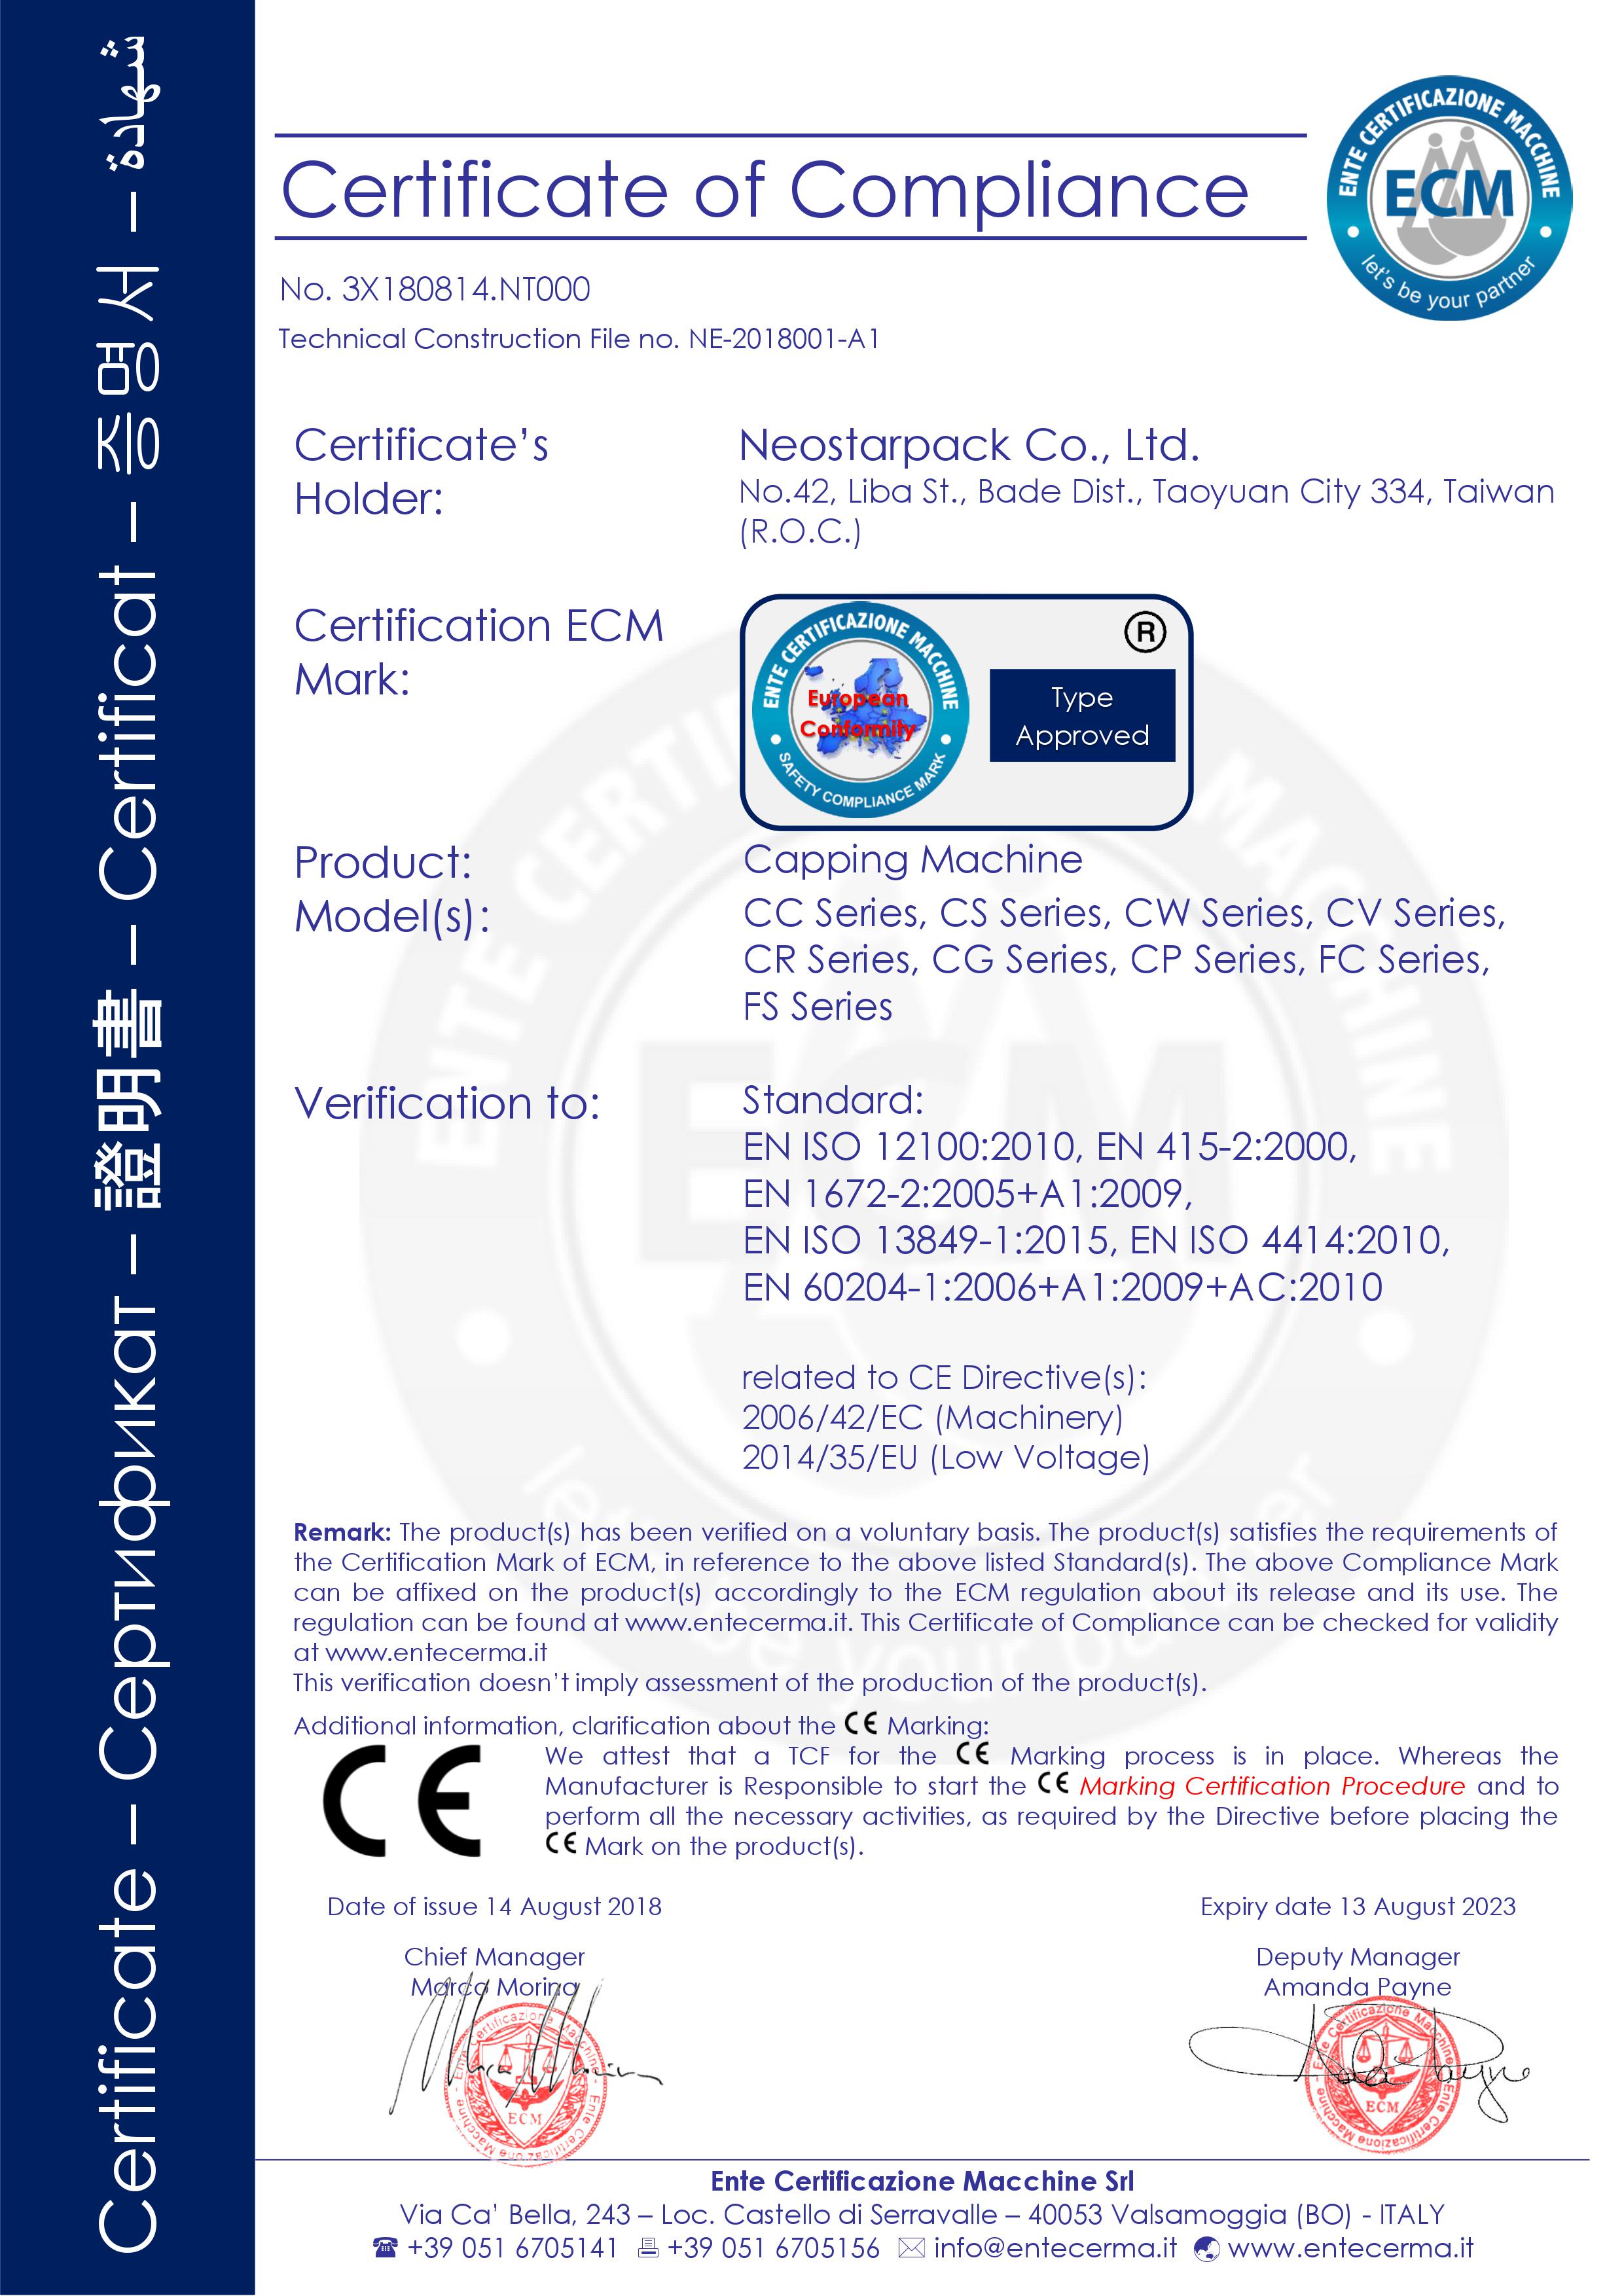 新碩達鎖旋全系列封蓋機CE認證